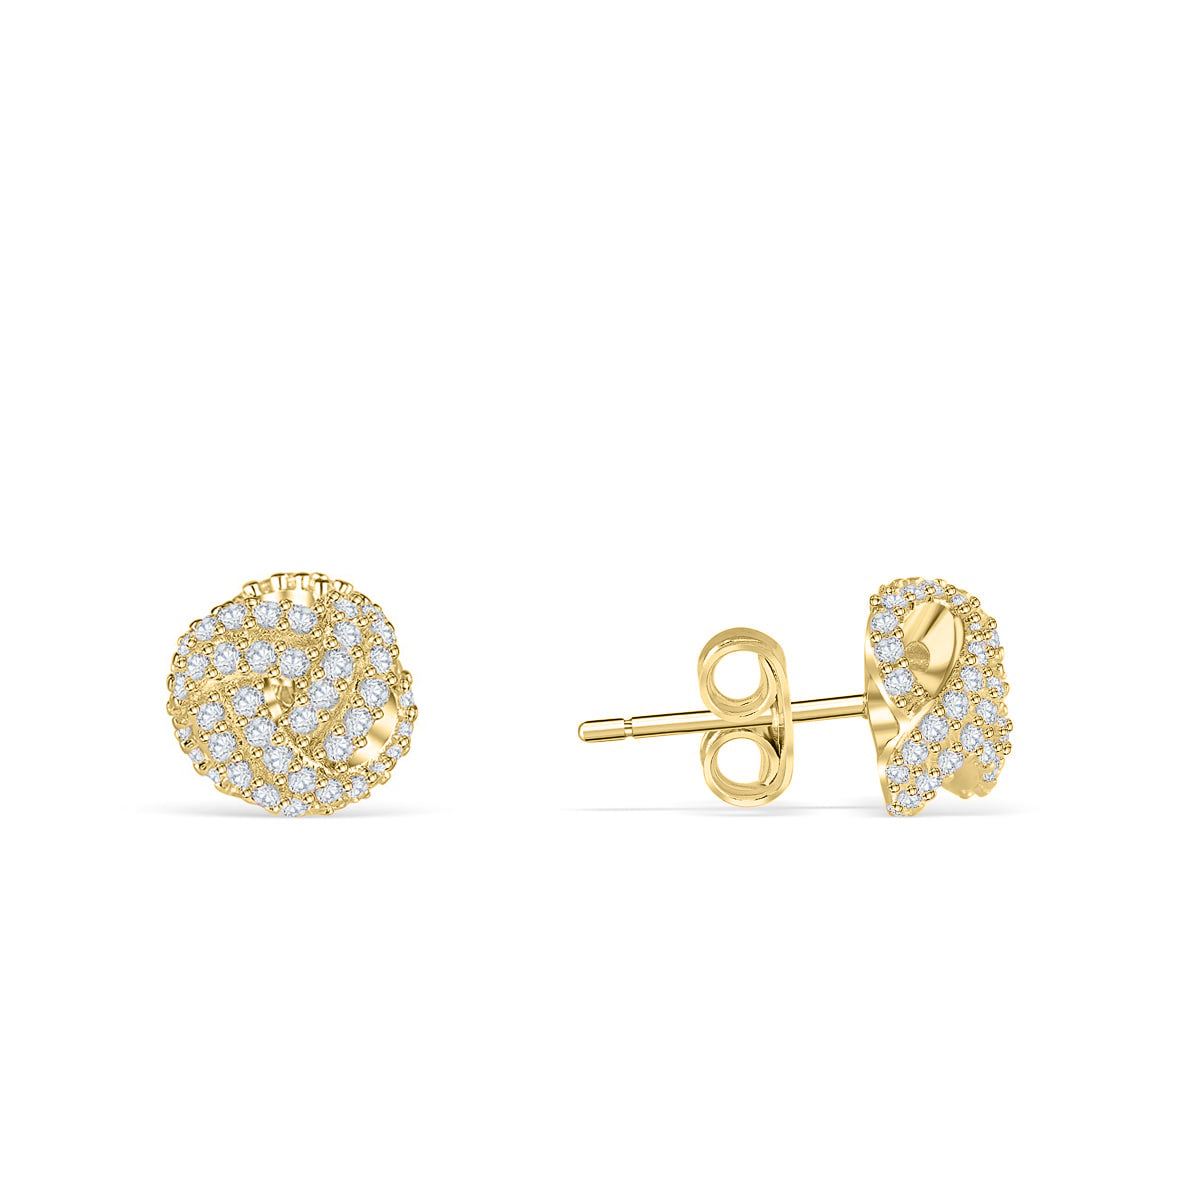 Gold knot stud earrings